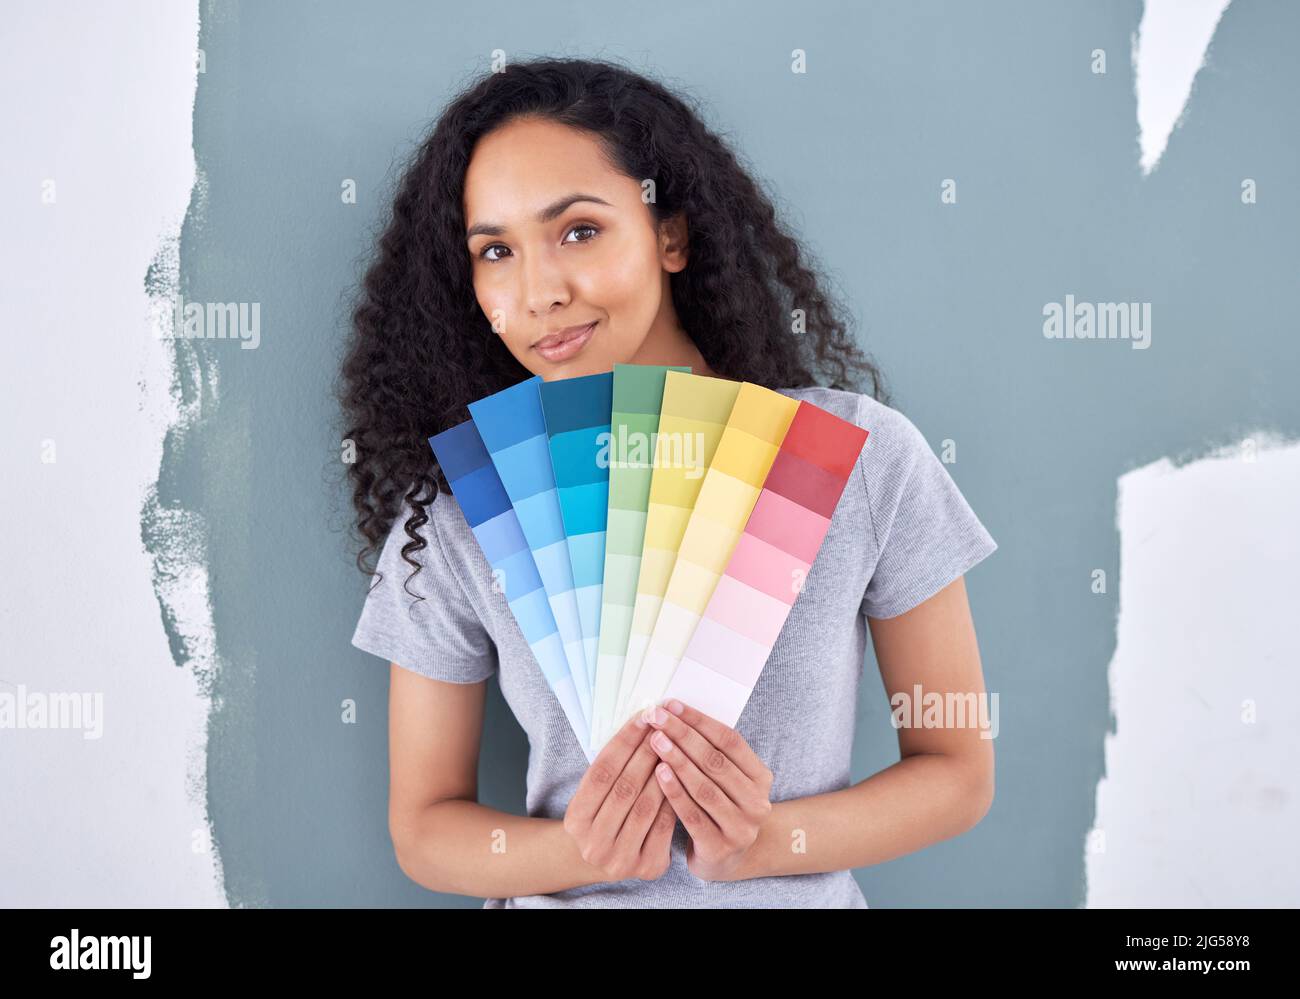 Che colore posso aggiungere per complimentarmi con questo. Scatto di una donna che tiene in piedi i campioni di colore mentre si alza contro una parete dipinta. Foto Stock